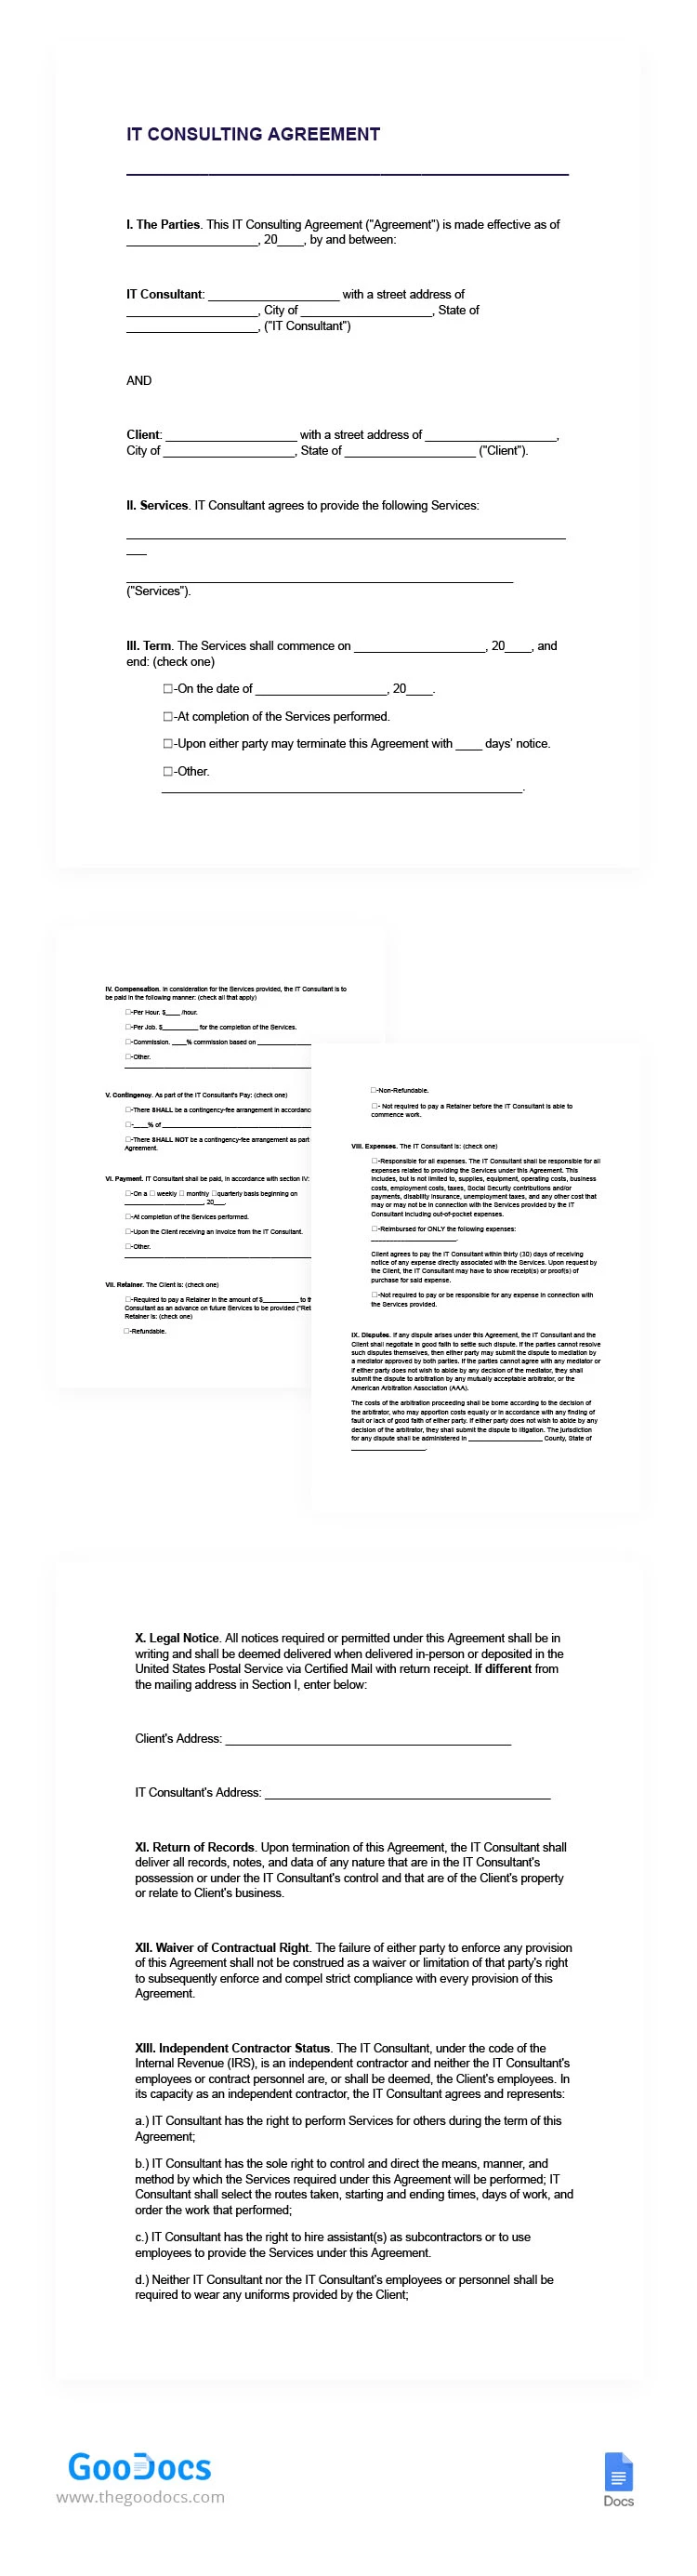 Contrato de Consultoría en Tecnologías de la Información - free Google Docs Template - 10066529